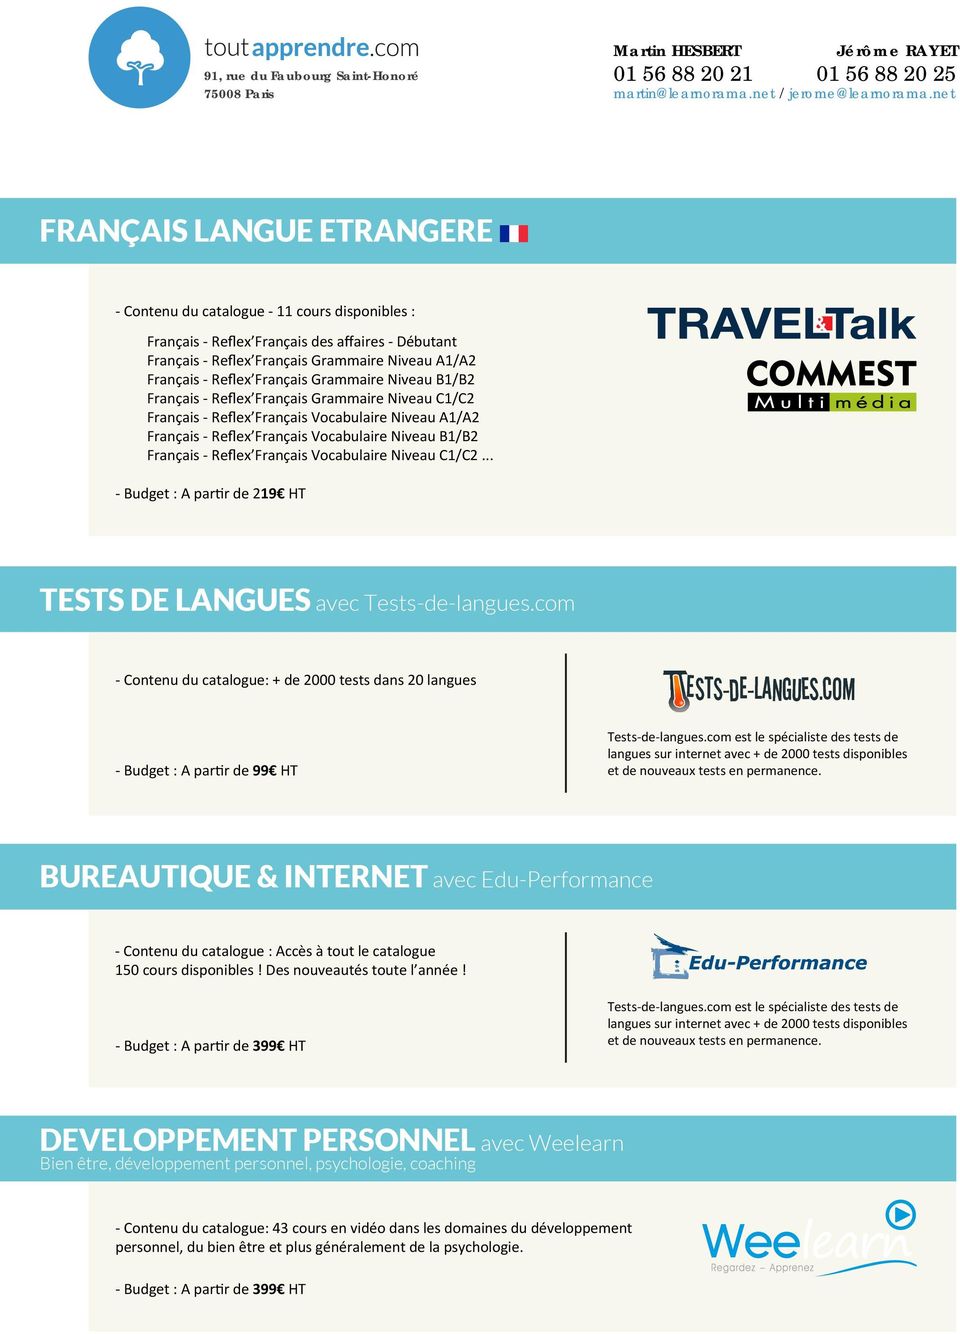 Reflex Français Vocabulaire Niveau C1/C2... - Budget : A partir de 219 HT TESTS DE LANGUES avec Tests-de-langues.